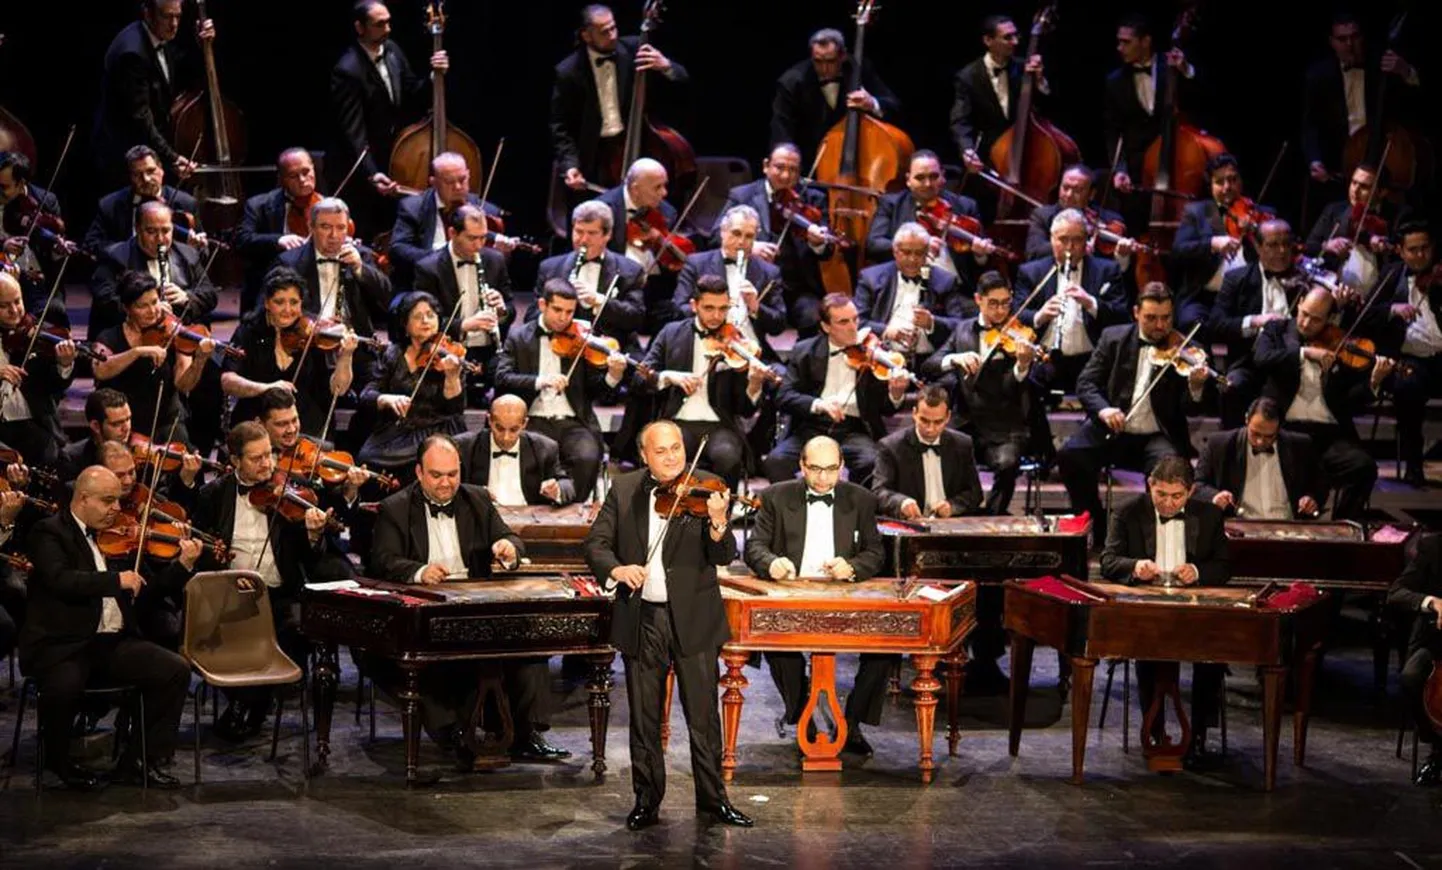 Kontserdimajas esineb Budapesti mustlasorkestri 100 viiulit.